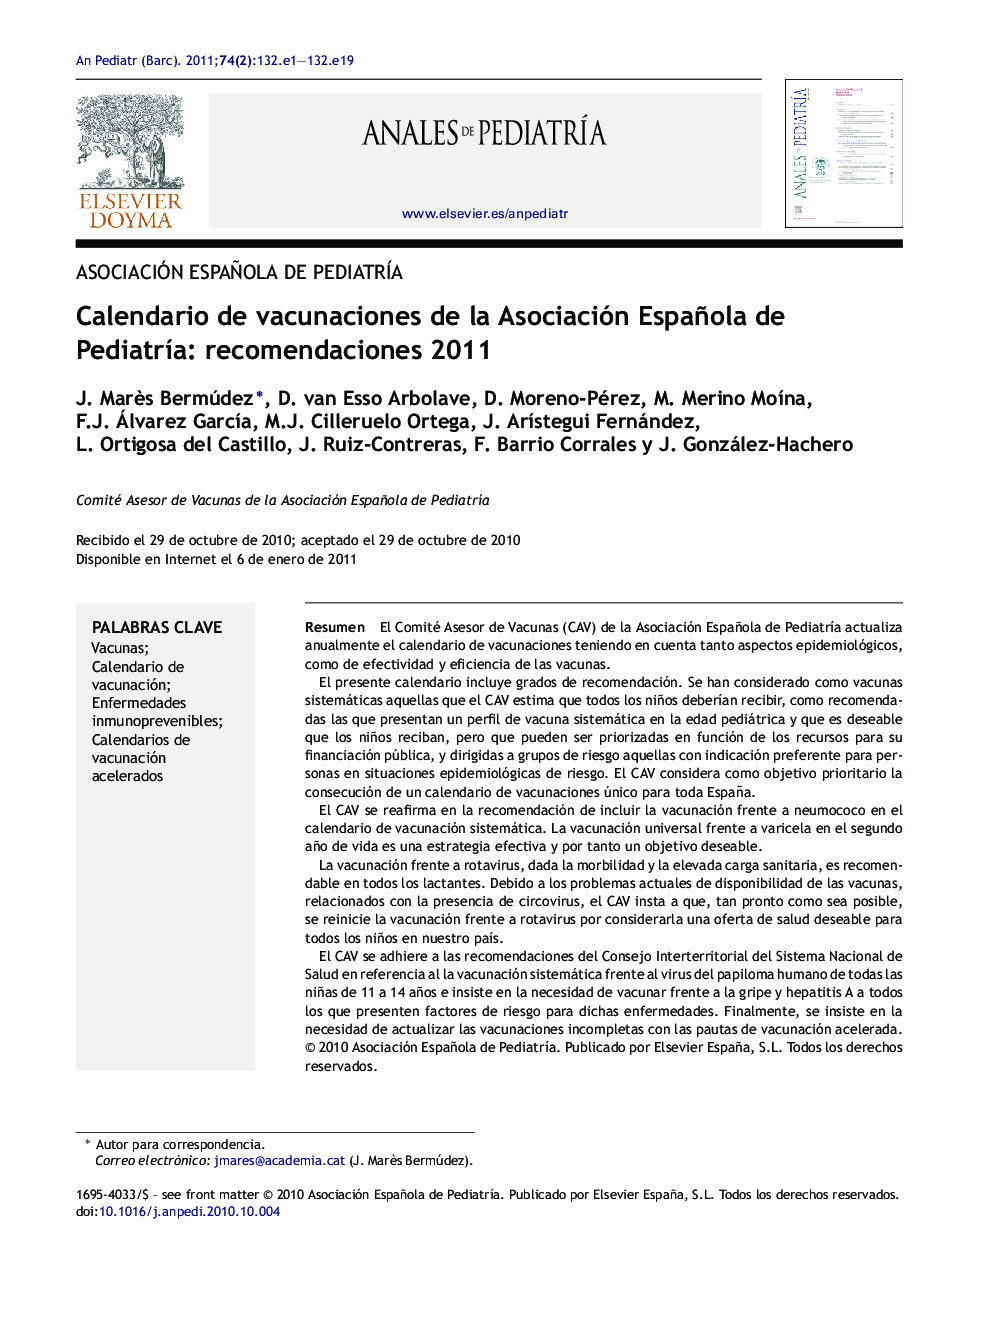 Calendario de vacunaciones de la Asociación Española de PediatrÃ­a: recomendaciones 2011